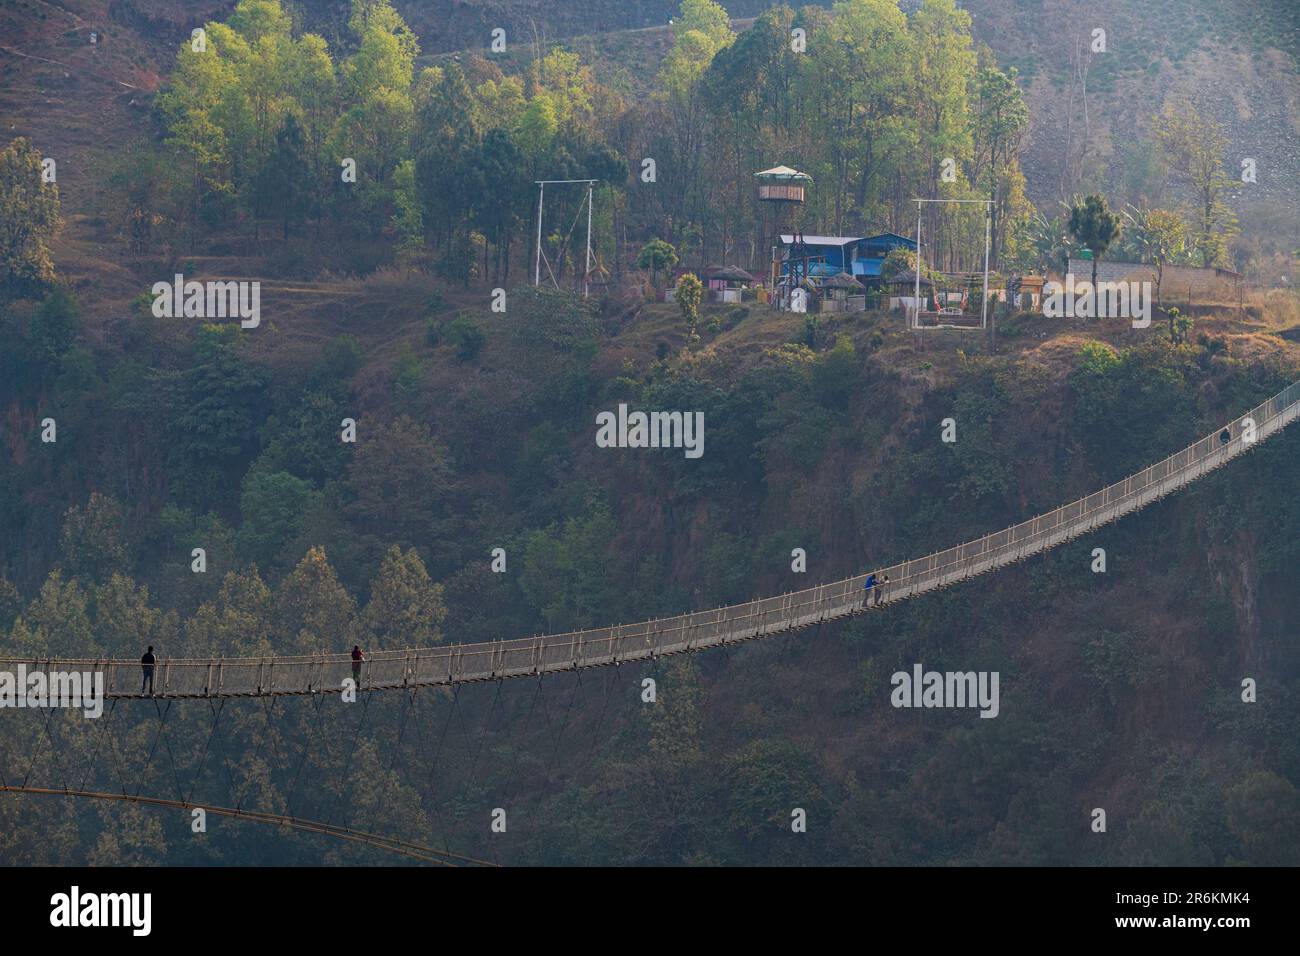 Hängebrücke von Pokhara über den Fluss Bhalam, Pokhara, Nepal, Asien Stockfoto